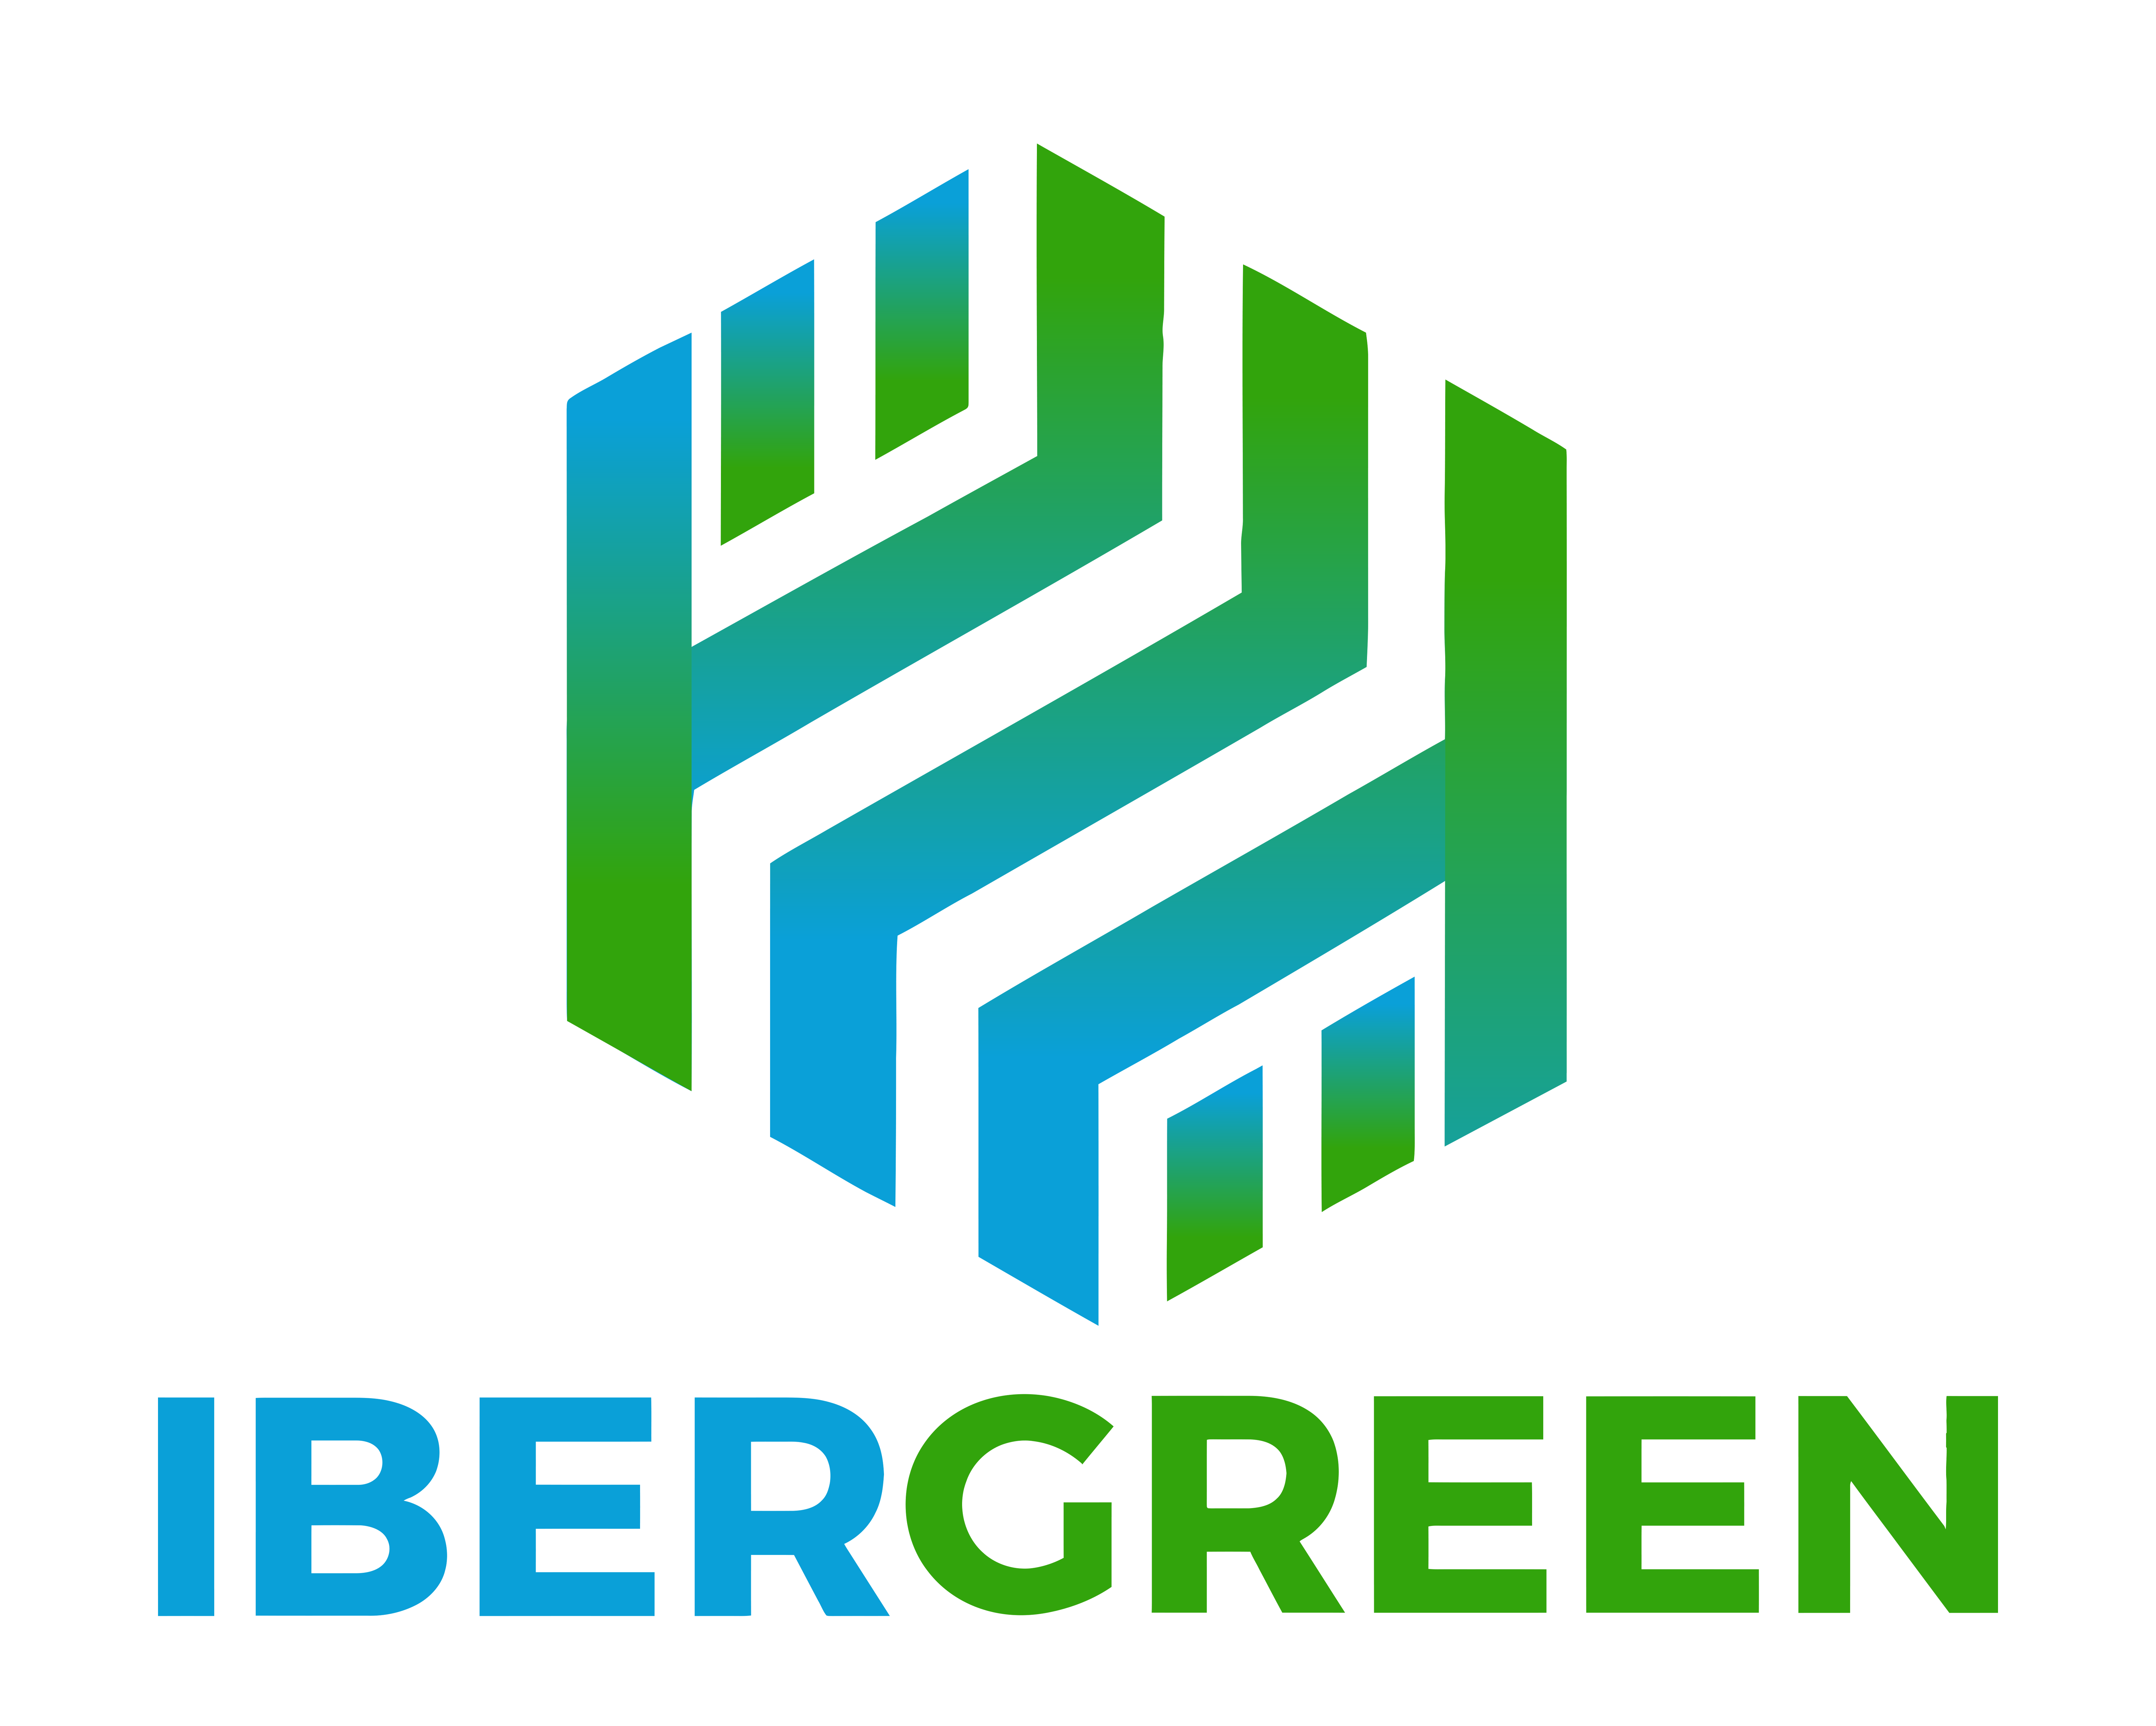 Ibergreen-Logo-003-Full-Color-Square-No-Stroke-003-New-Concept-01-White-Stroke